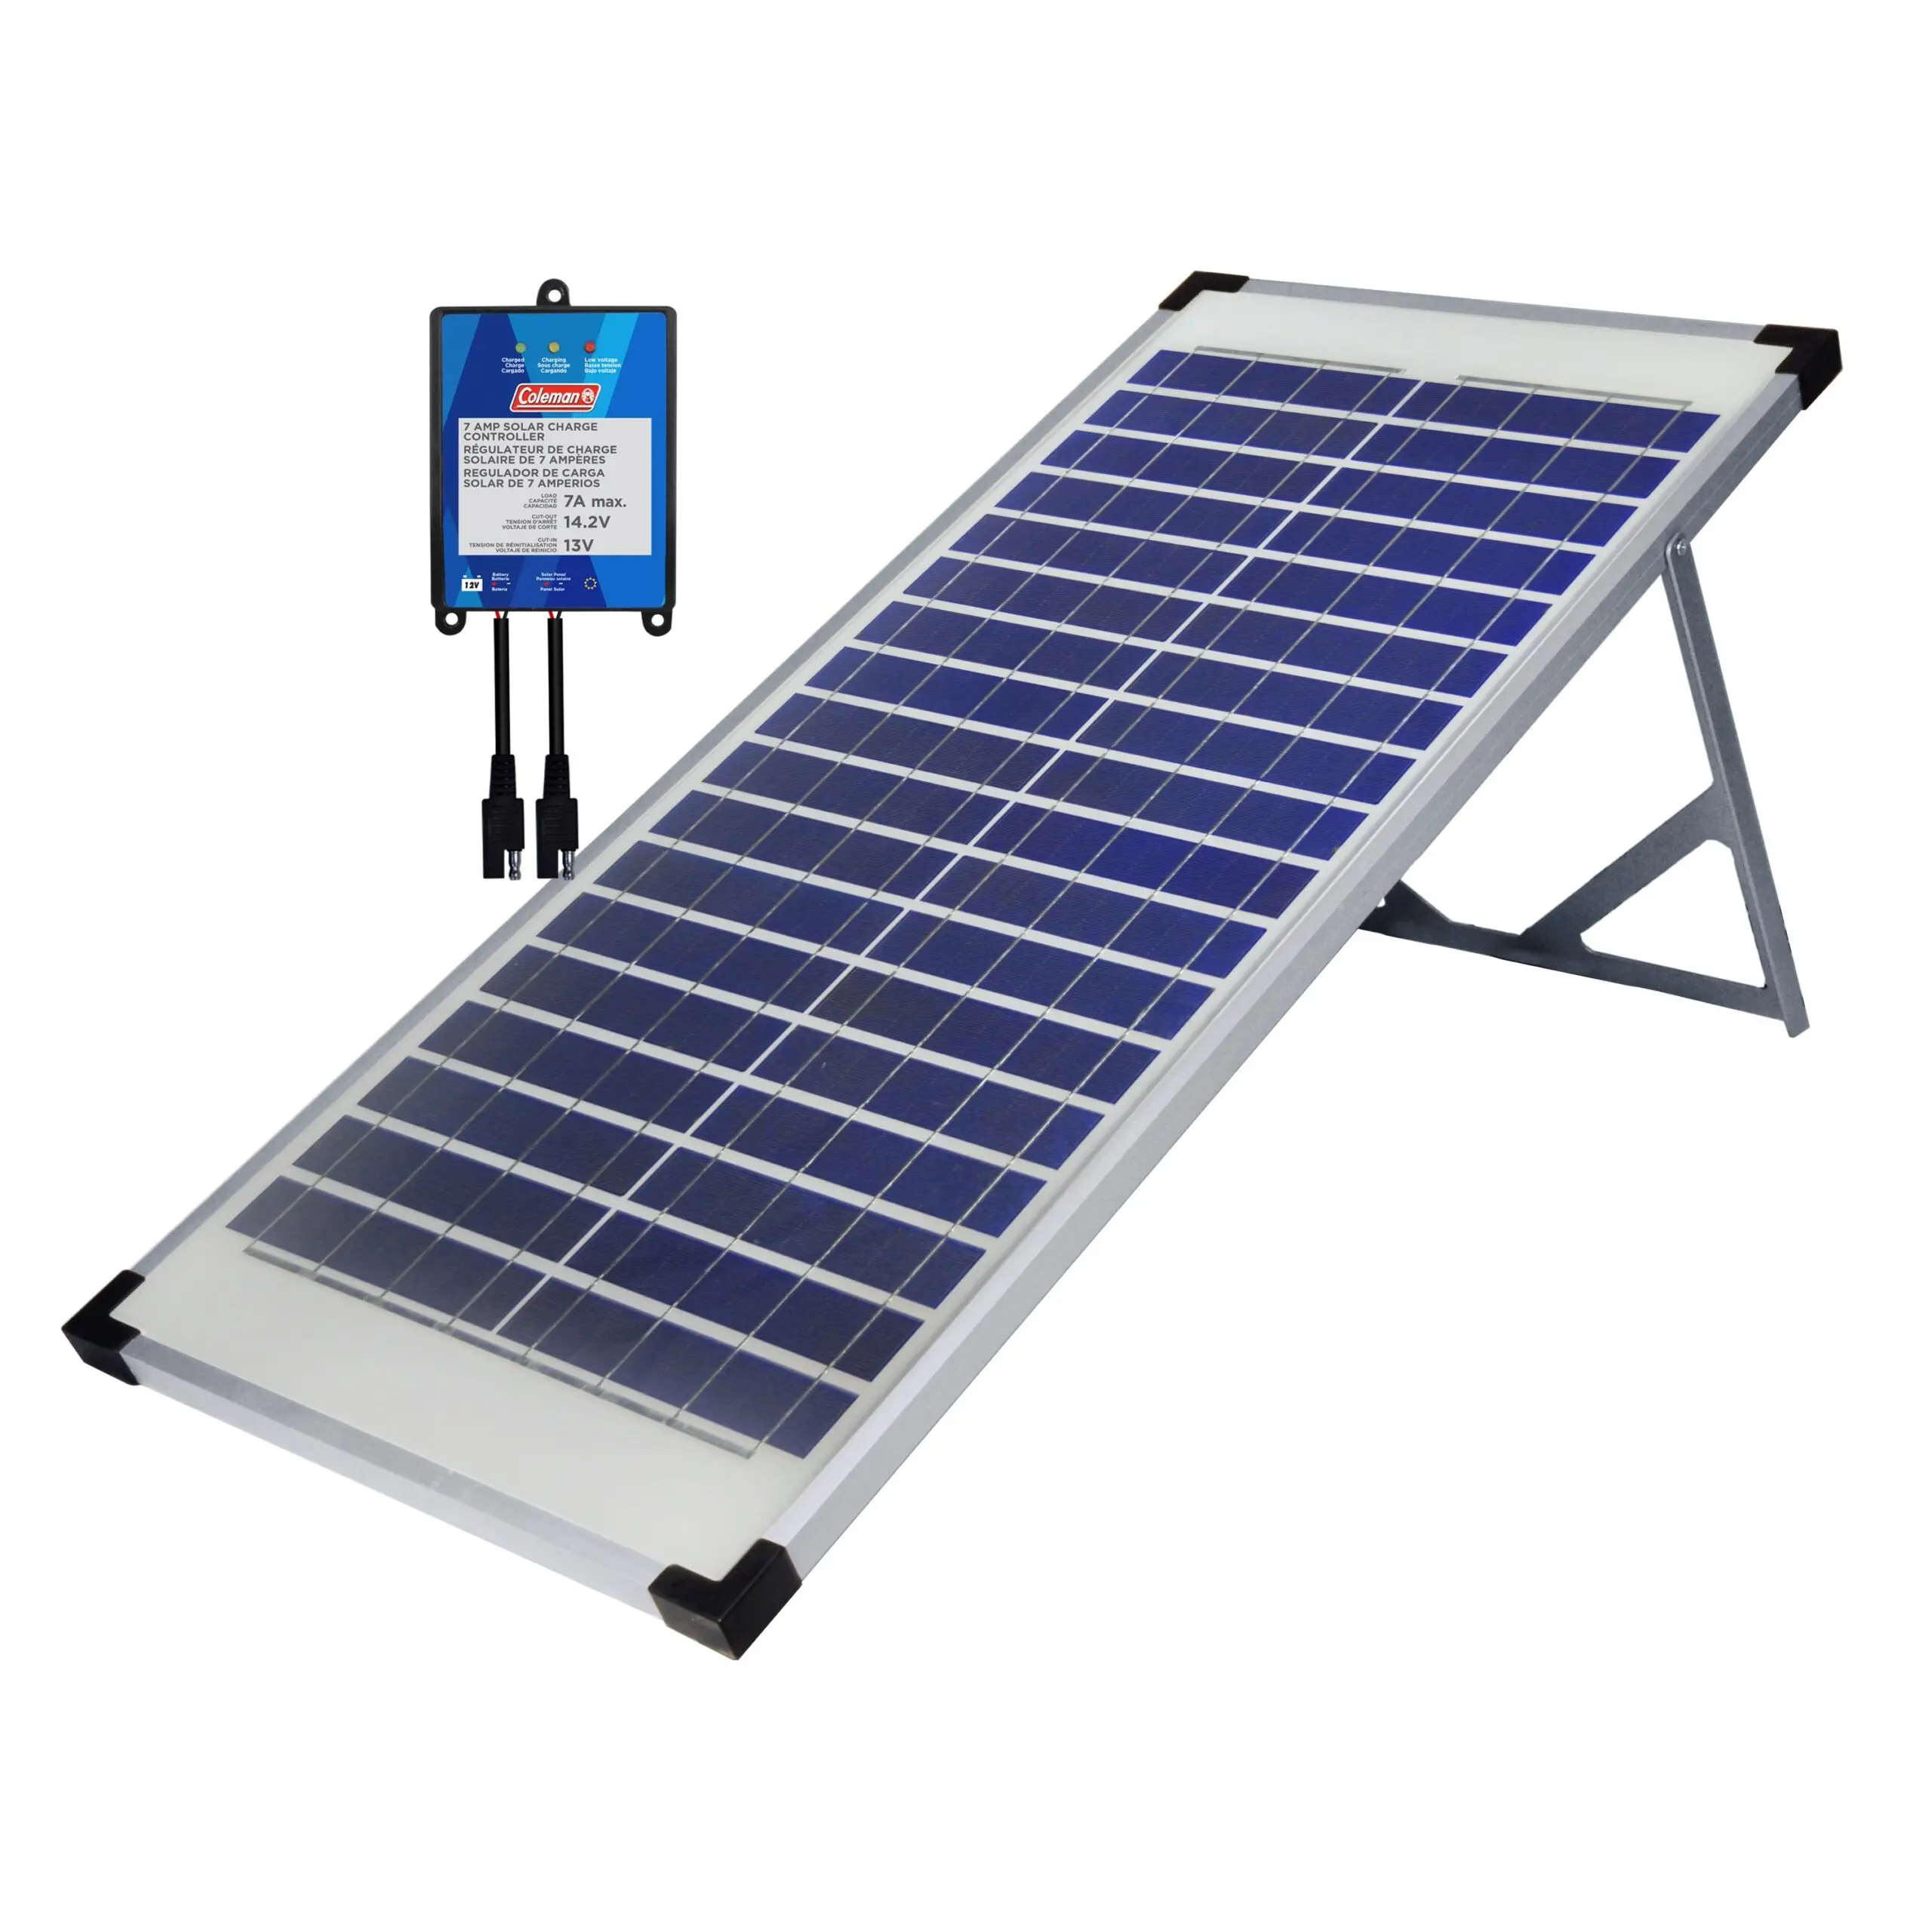 40 watt solar panel for rv - How much power does a 40 watt solar panel produce